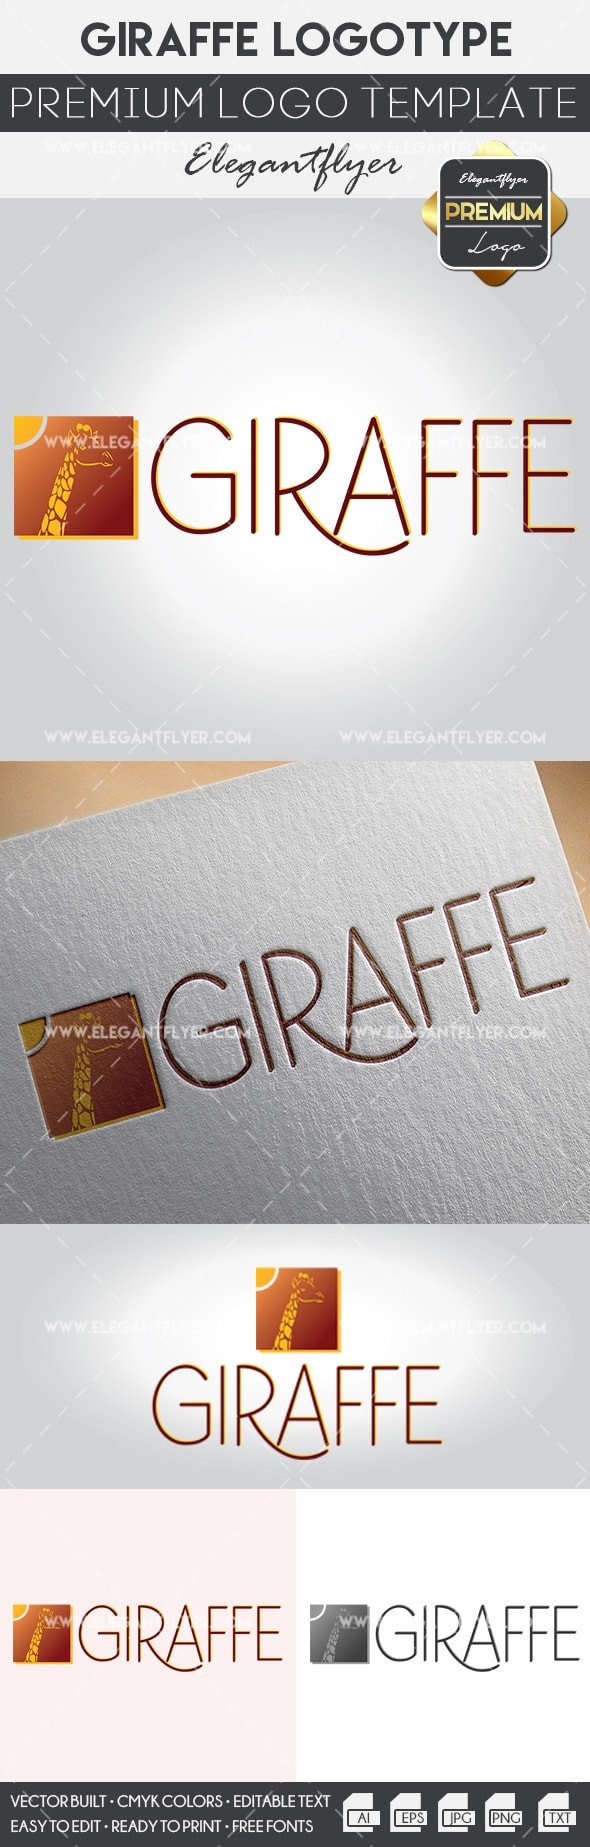 Giraffen-Logo by ElegantFlyer